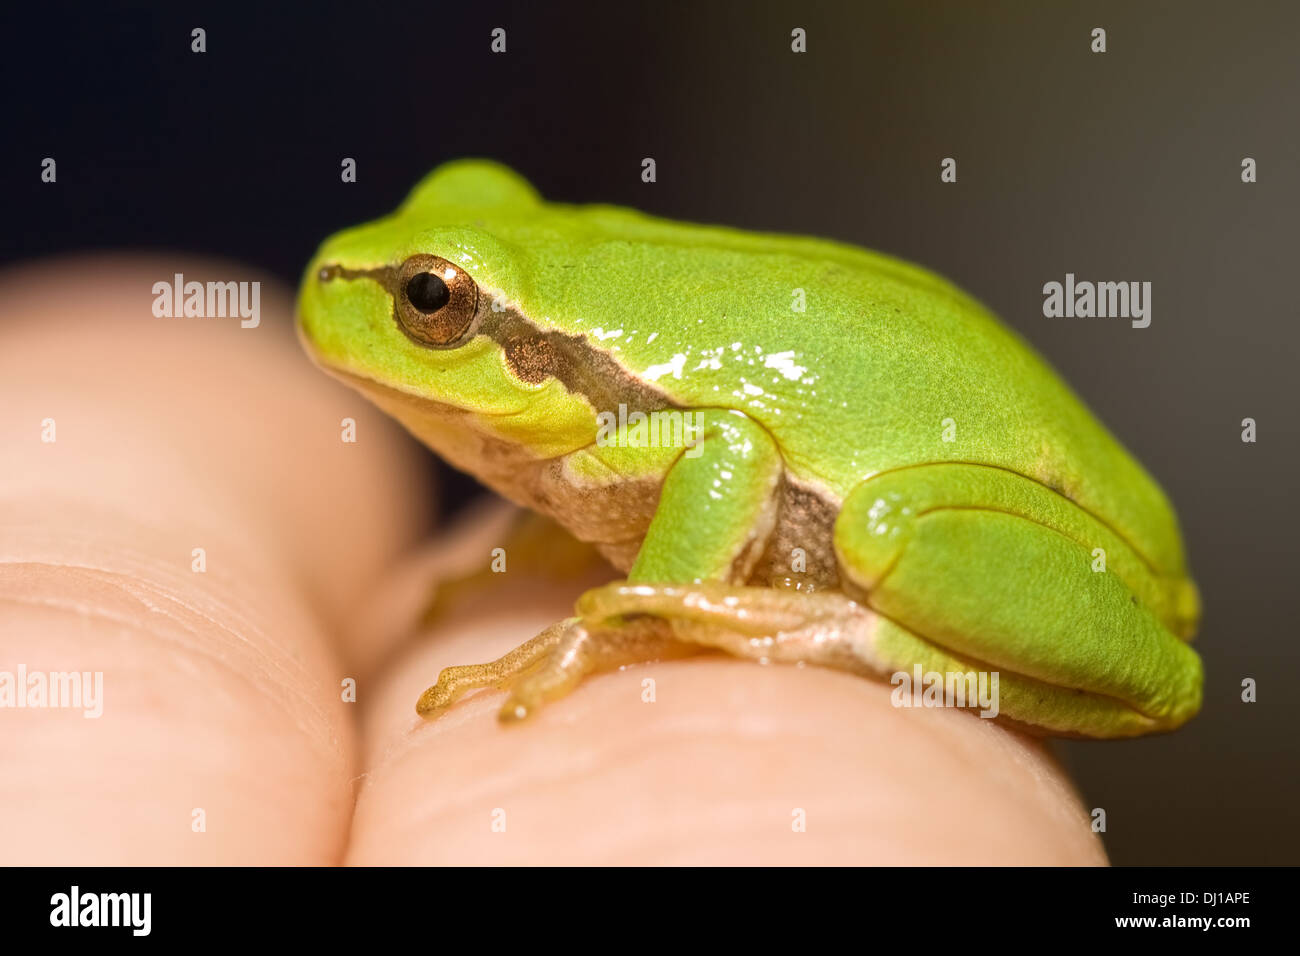 Frosch Auf Der Hand Stockfotos und -bilder Kaufen - Alamy